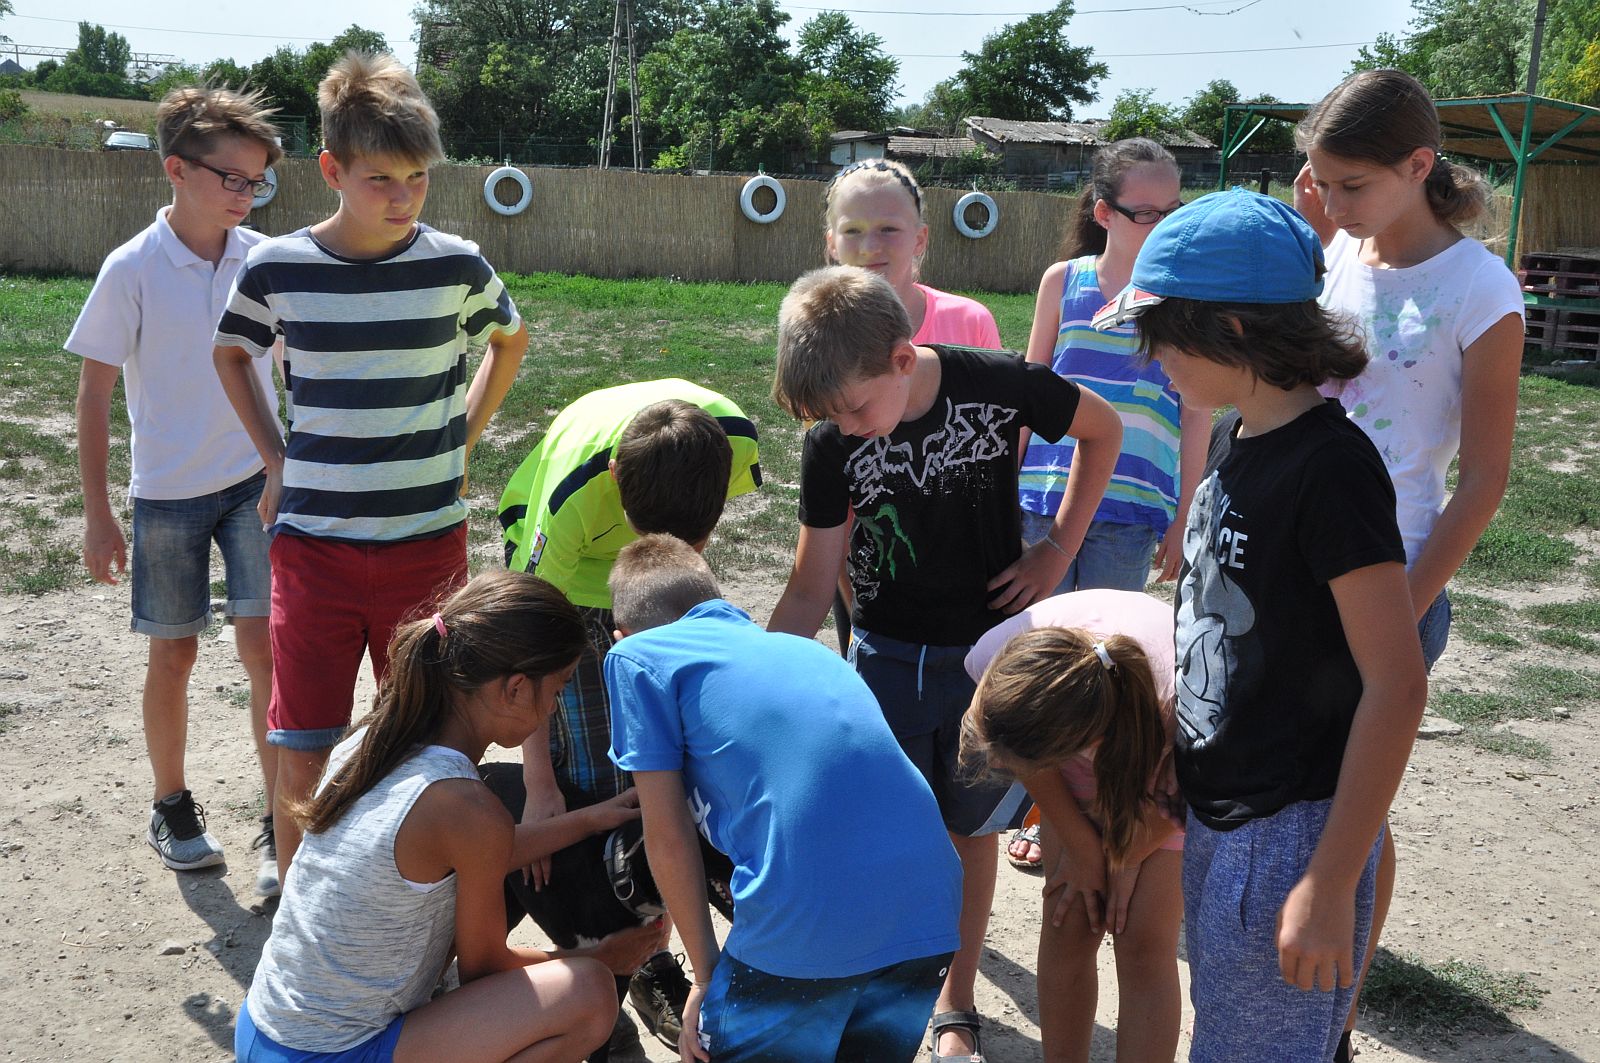 Játékos formában tanulnak a gyerekek felelősségvállalást a Herosz táborában